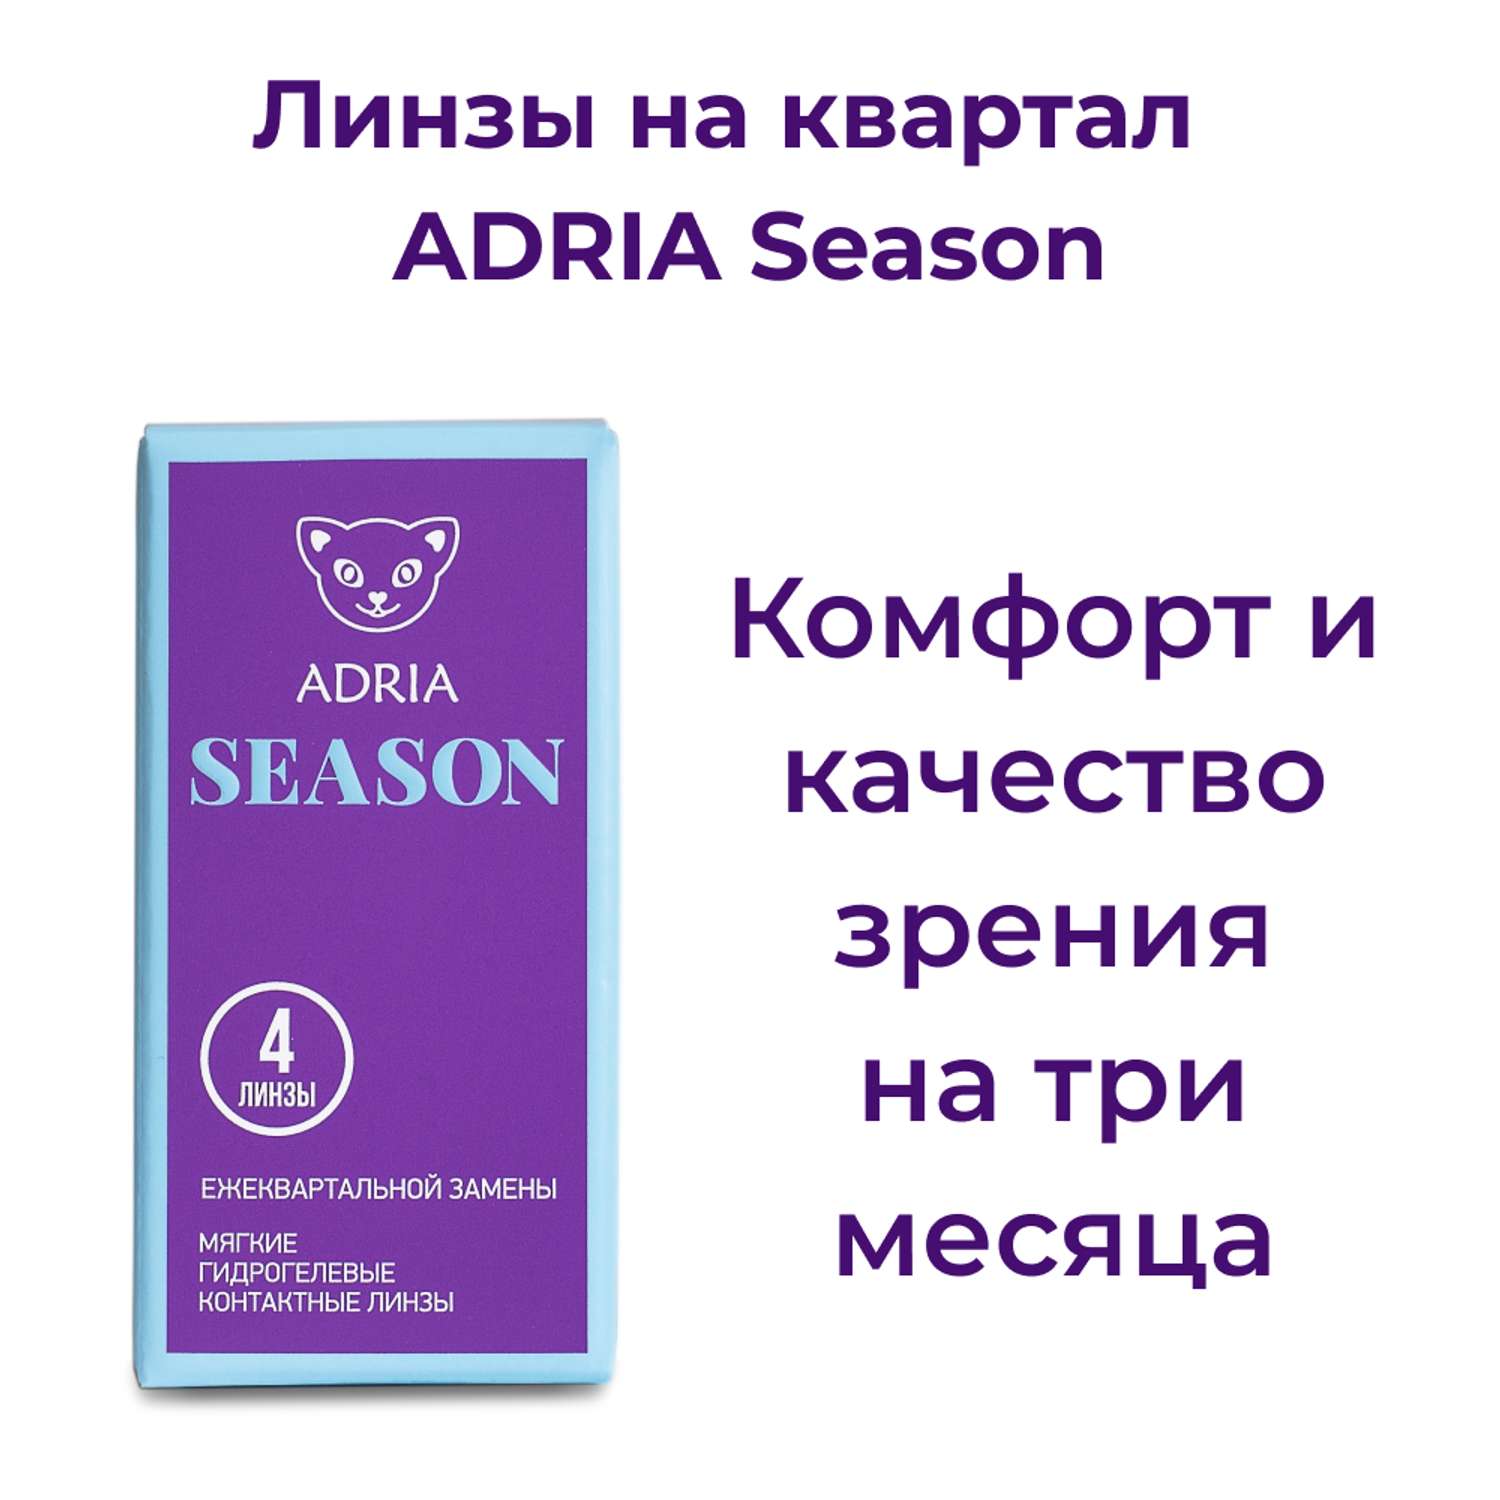 Контактные линзы ADRIA Season 4 линзы R 8.6 -2.25 - фото 2